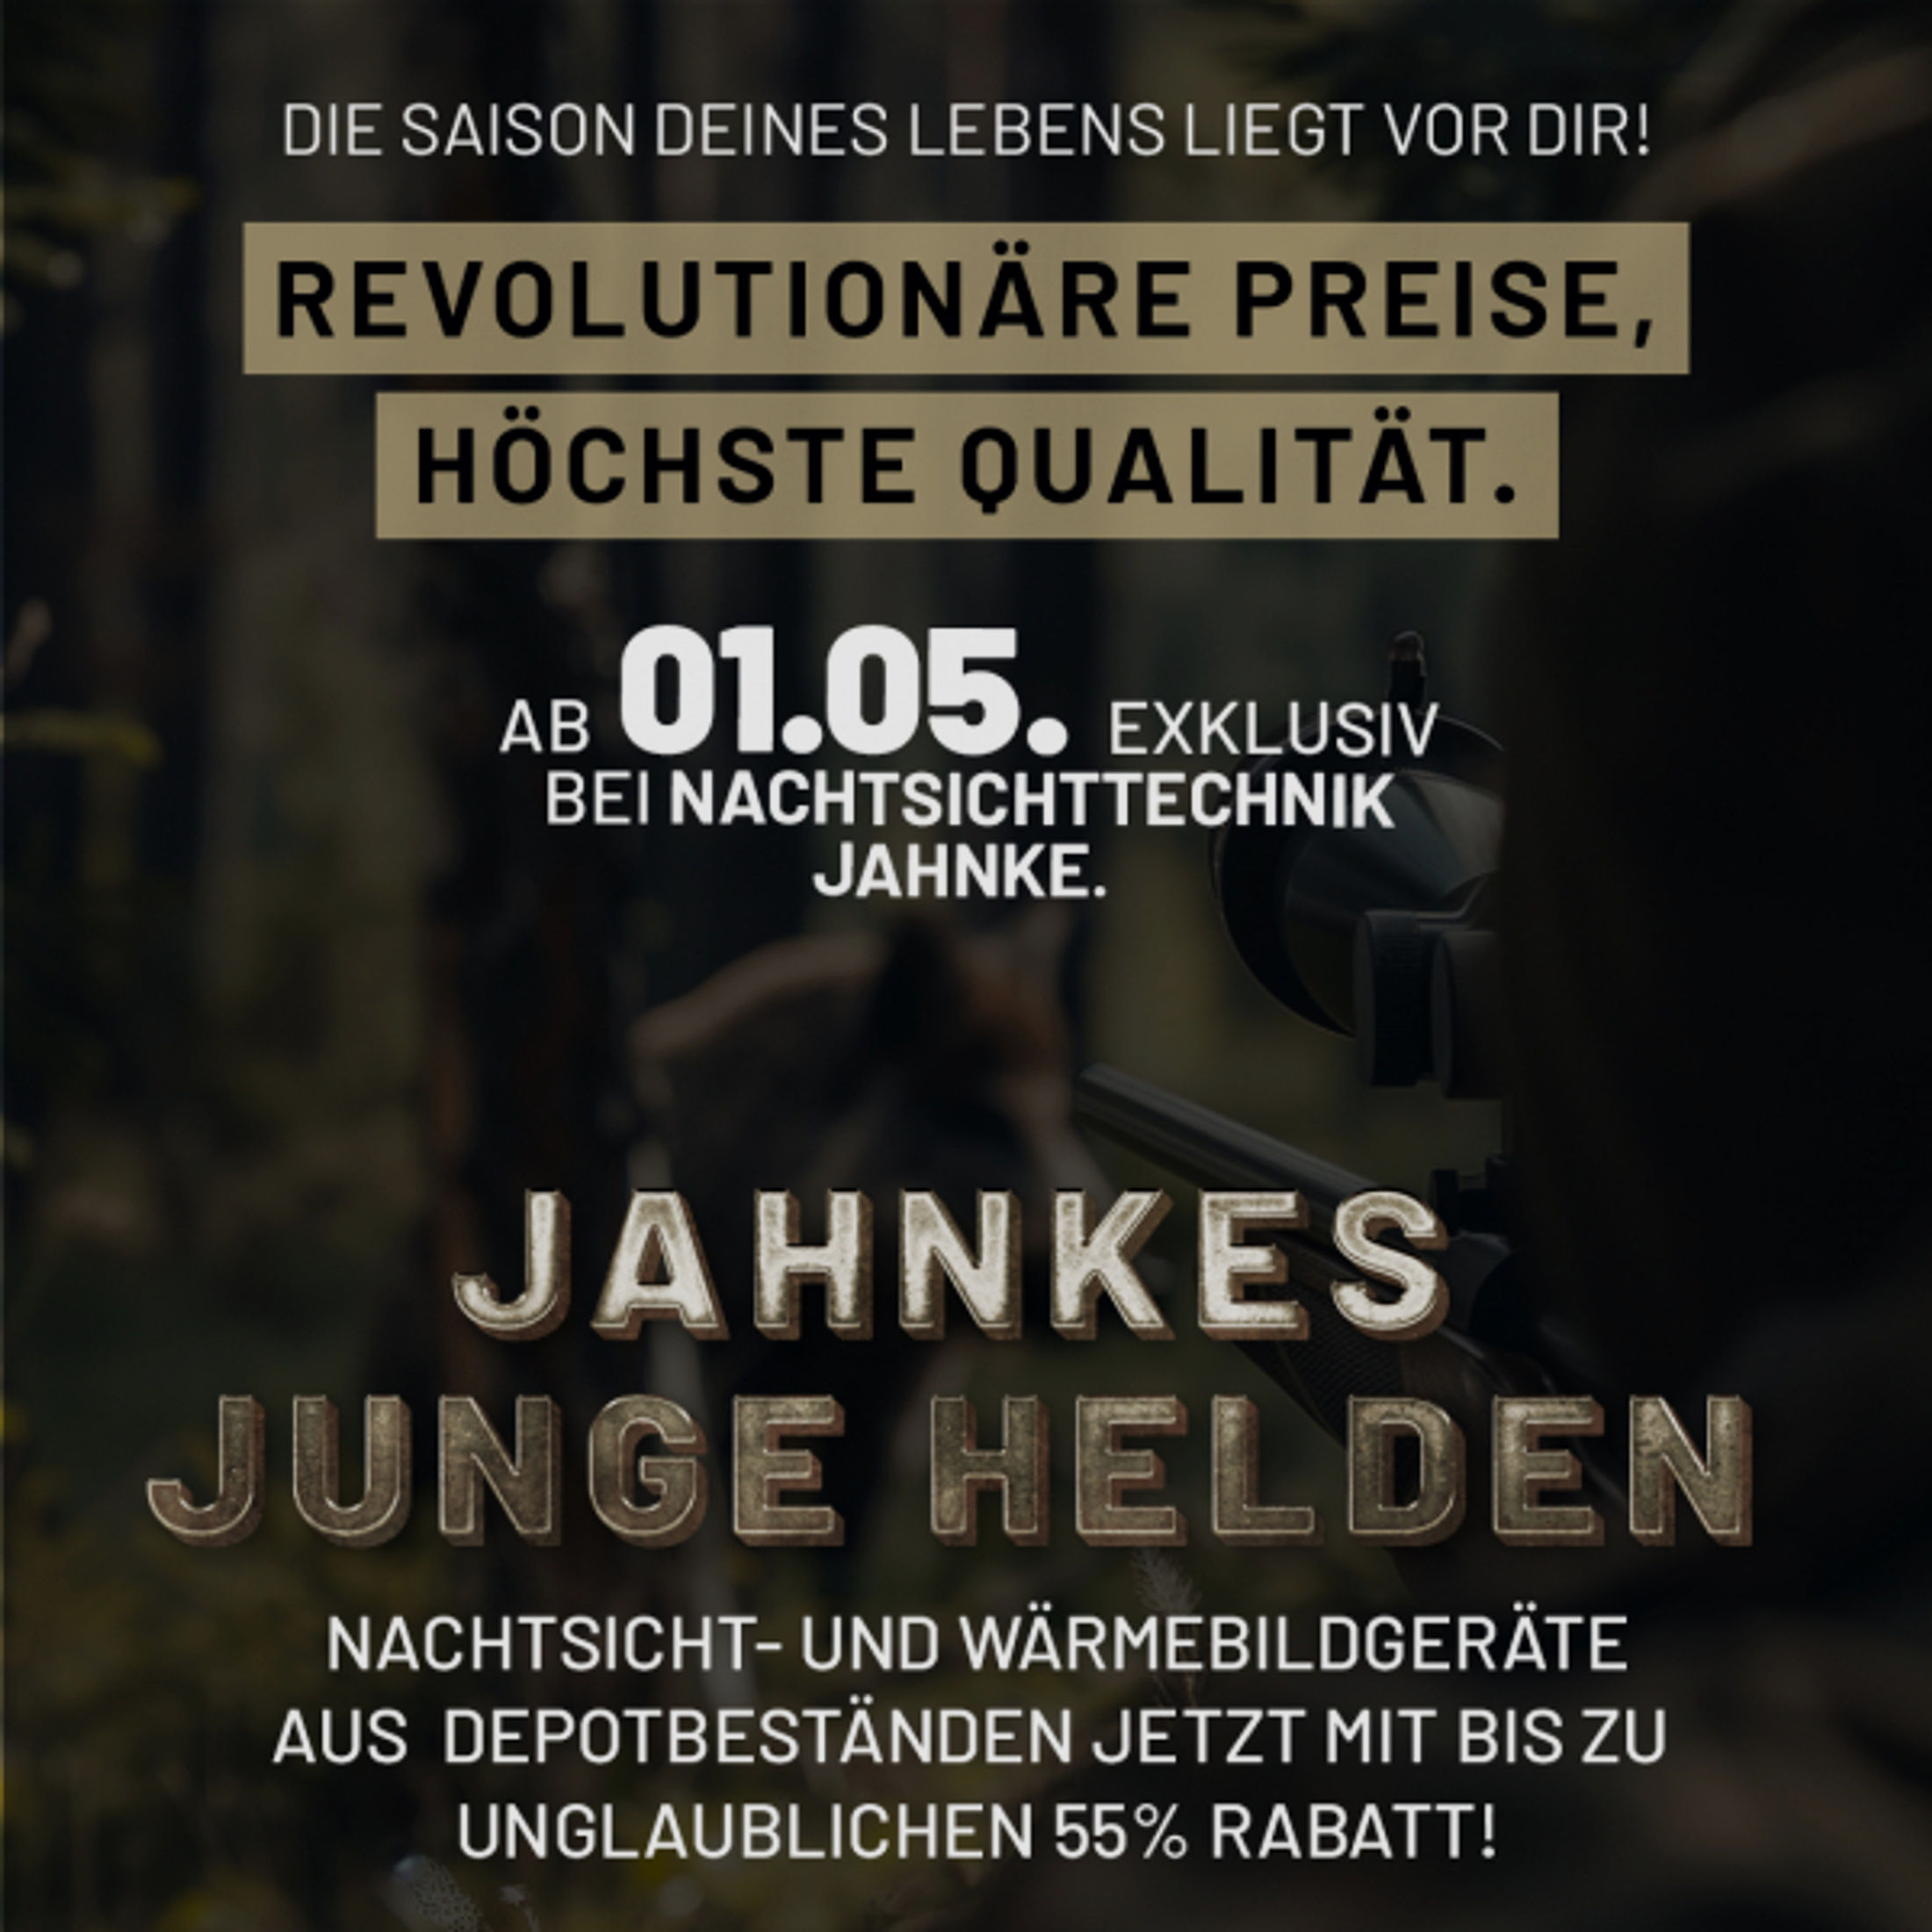 DJ-8 NSV 1×58 JJH aus der Jahnke Junge Helden" Aktion LK 1 S 1, Jahnke Premium